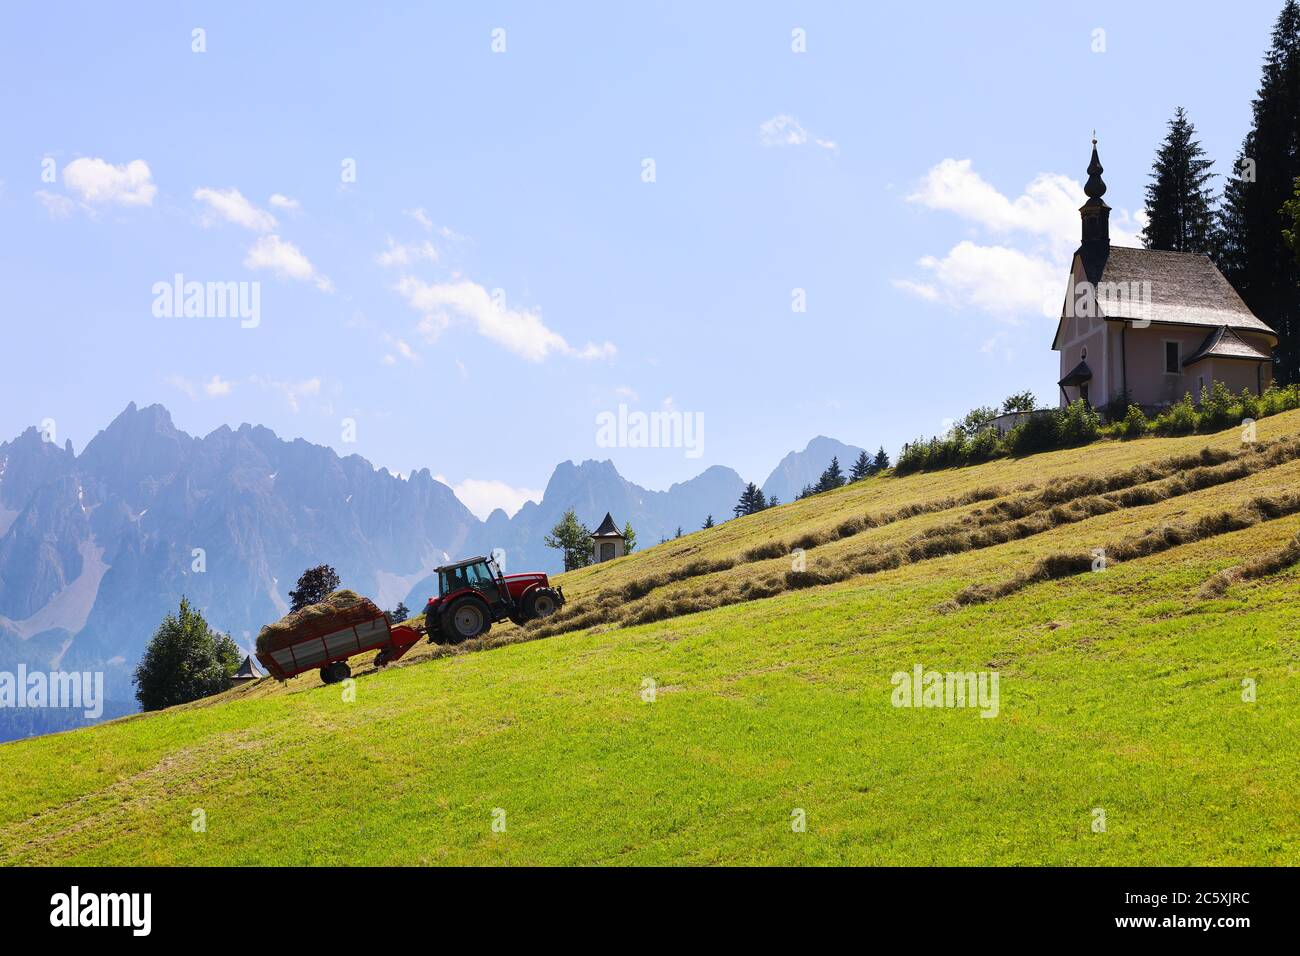 Romantische alpine ländliche Landschaft mit Traktor sammeln Heu und neblig Berge im Hintergrund mit Platz für Ihren Text Stockfoto